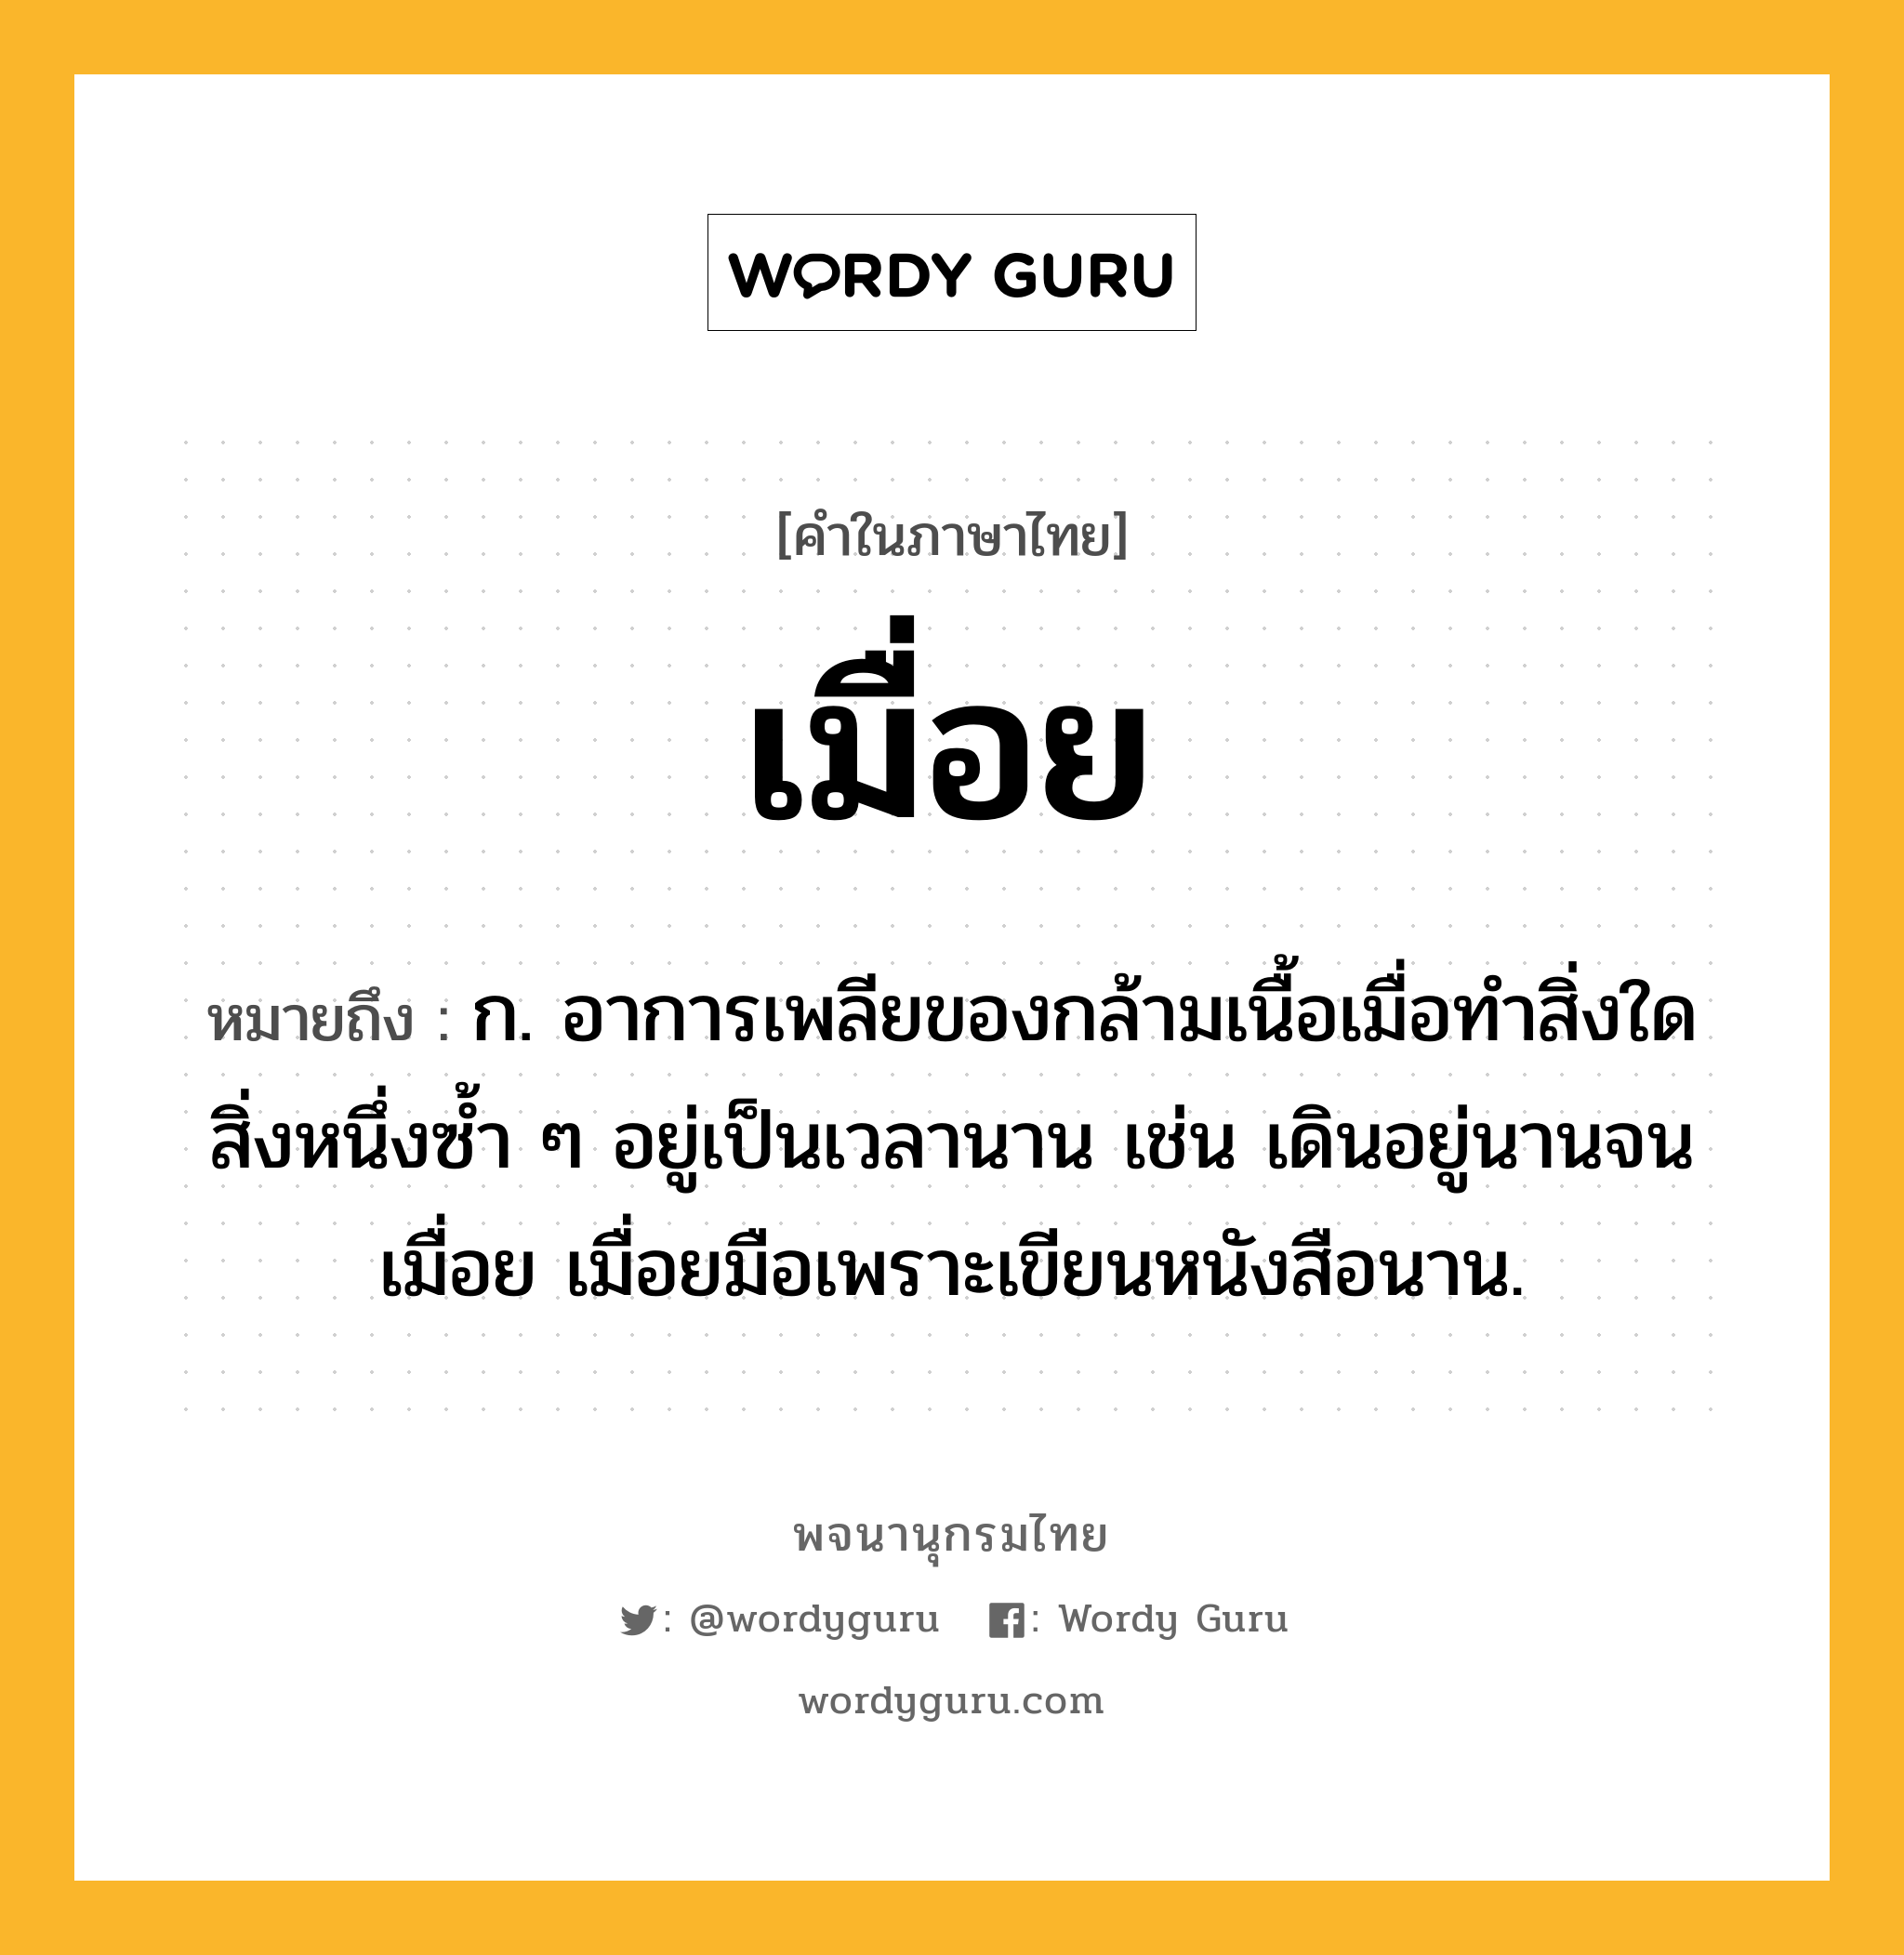 เมื่อย หมายถึงอะไร?, คำในภาษาไทย เมื่อย หมายถึง ก. อาการเพลียของกล้ามเนื้อเมื่อทำสิ่งใดสิ่งหนึ่งซ้ำ ๆ อยู่เป็นเวลานาน เช่น เดินอยู่นานจนเมื่อย เมื่อยมือเพราะเขียนหนังสือนาน.